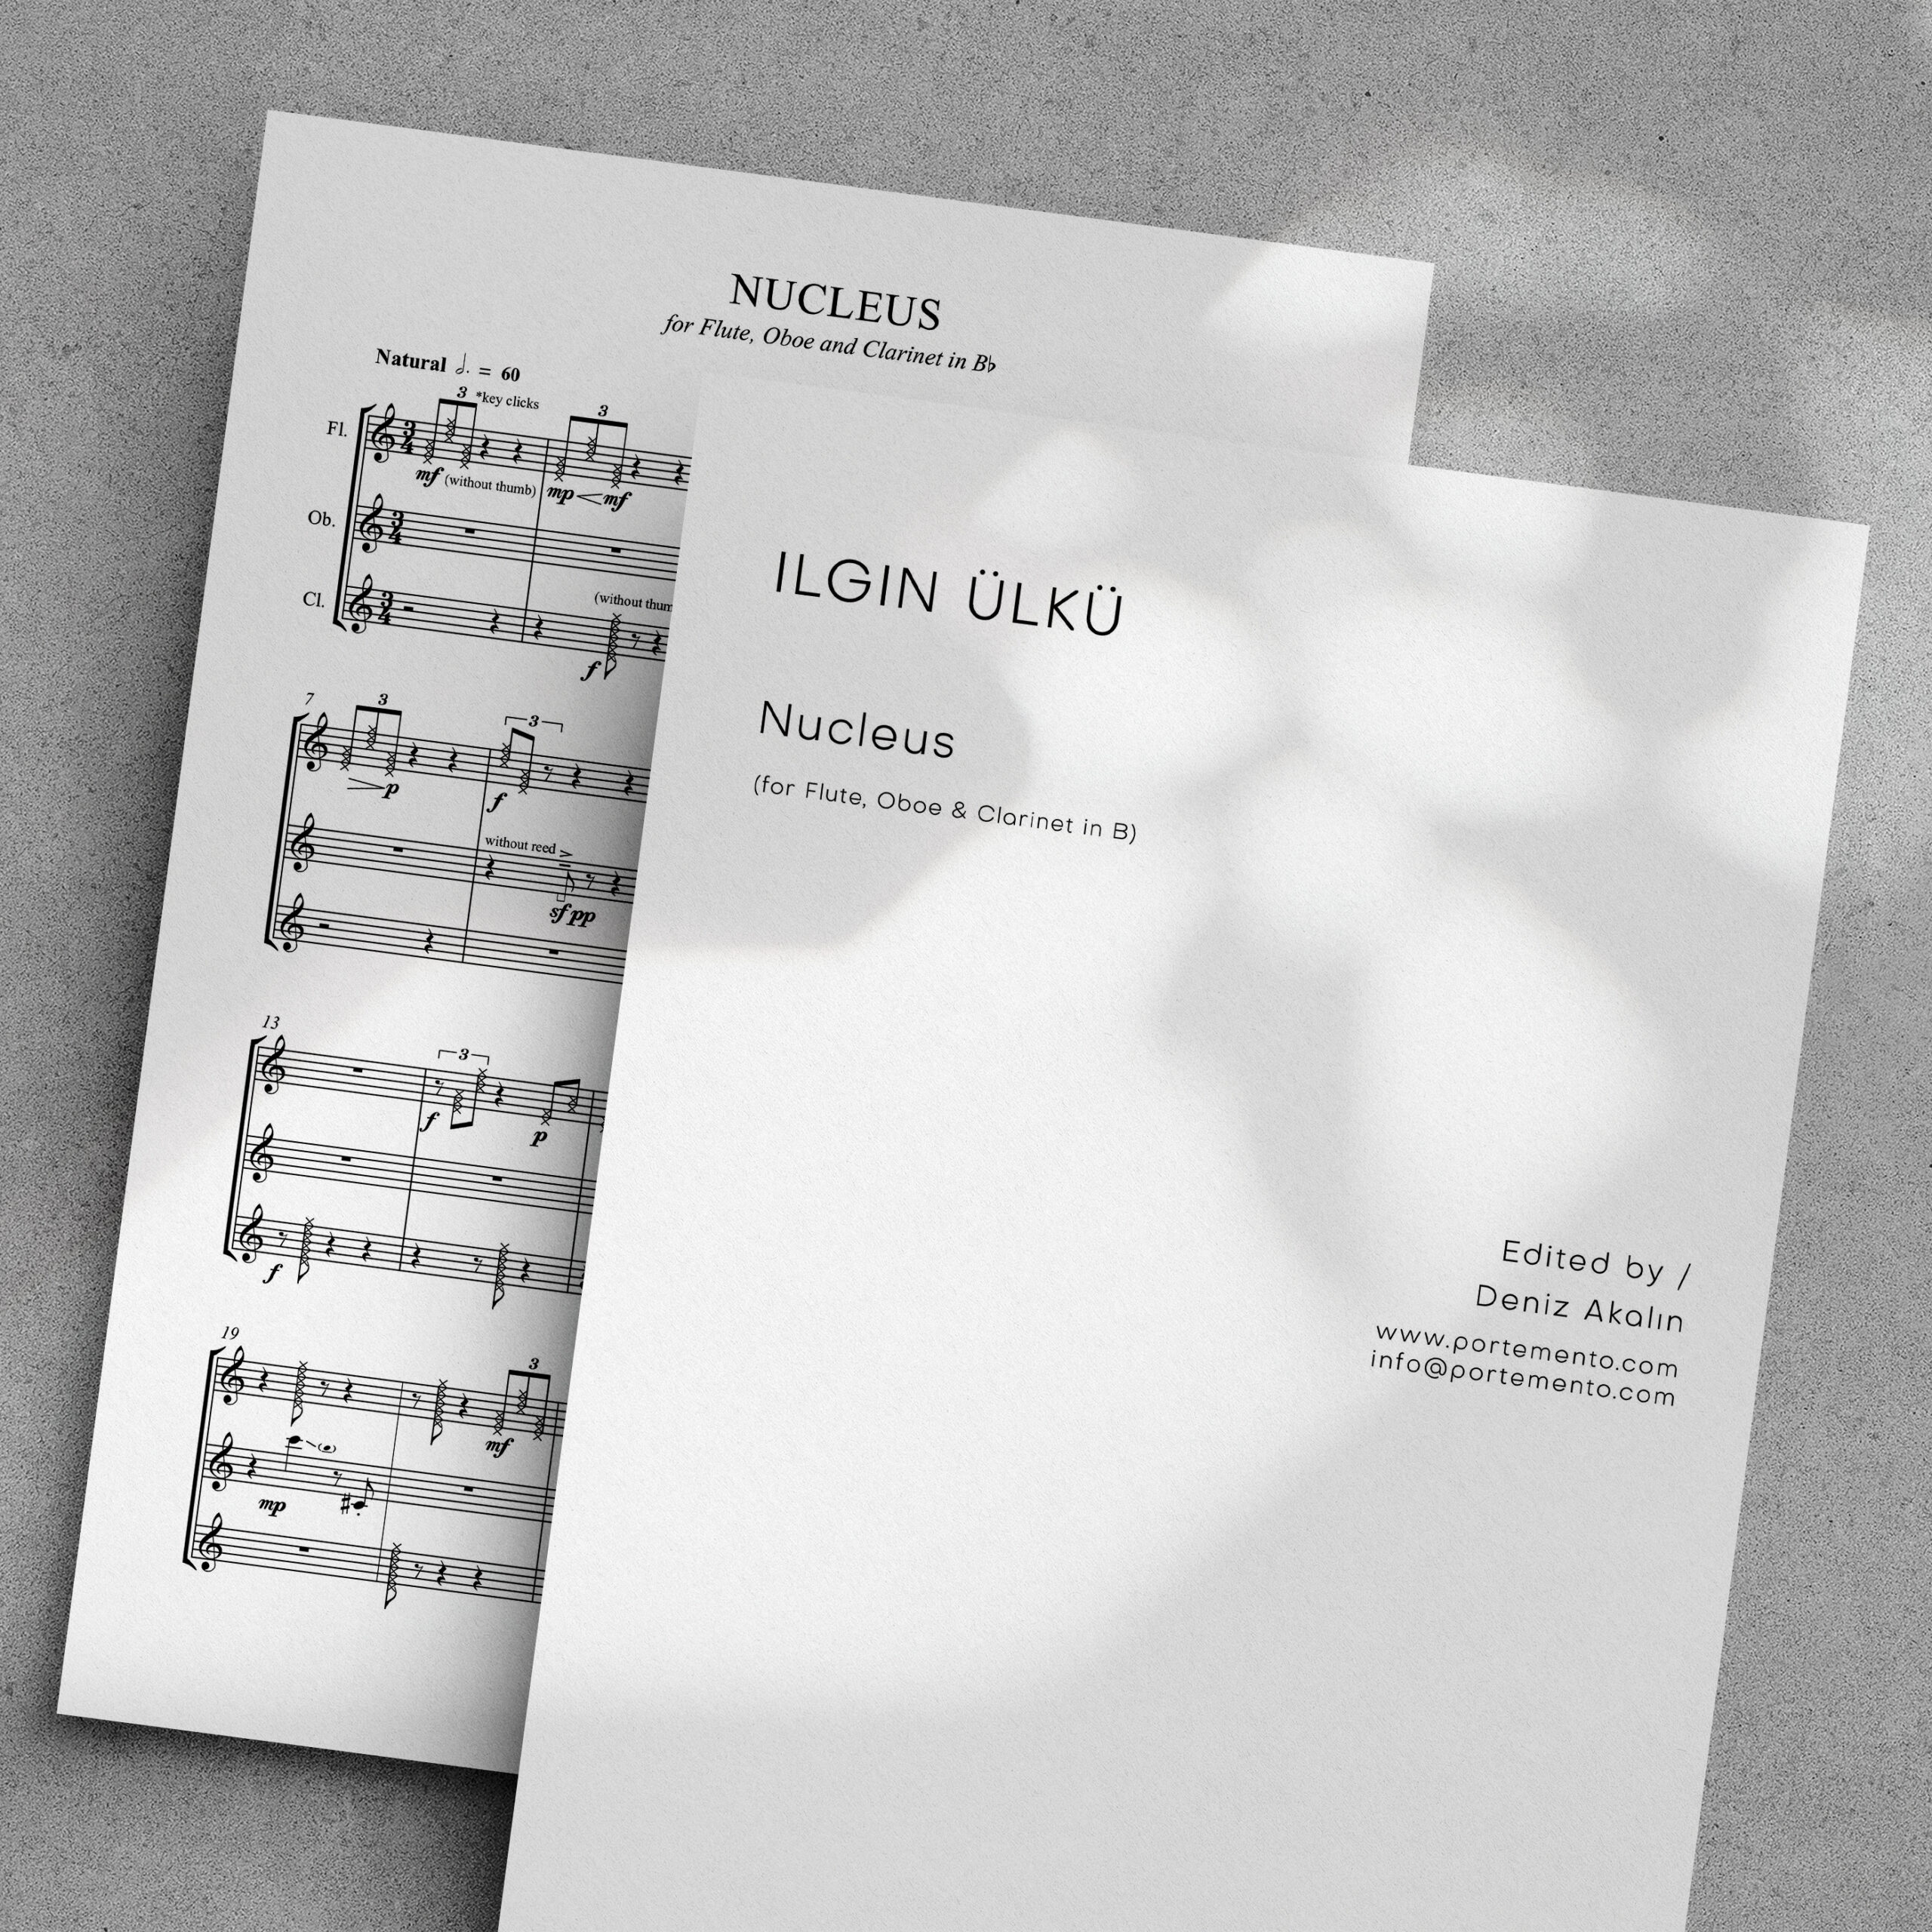 Ilgın Ülkü – “Nucleus” for Flute, Oboe & Clarinet in Bb - Portemento